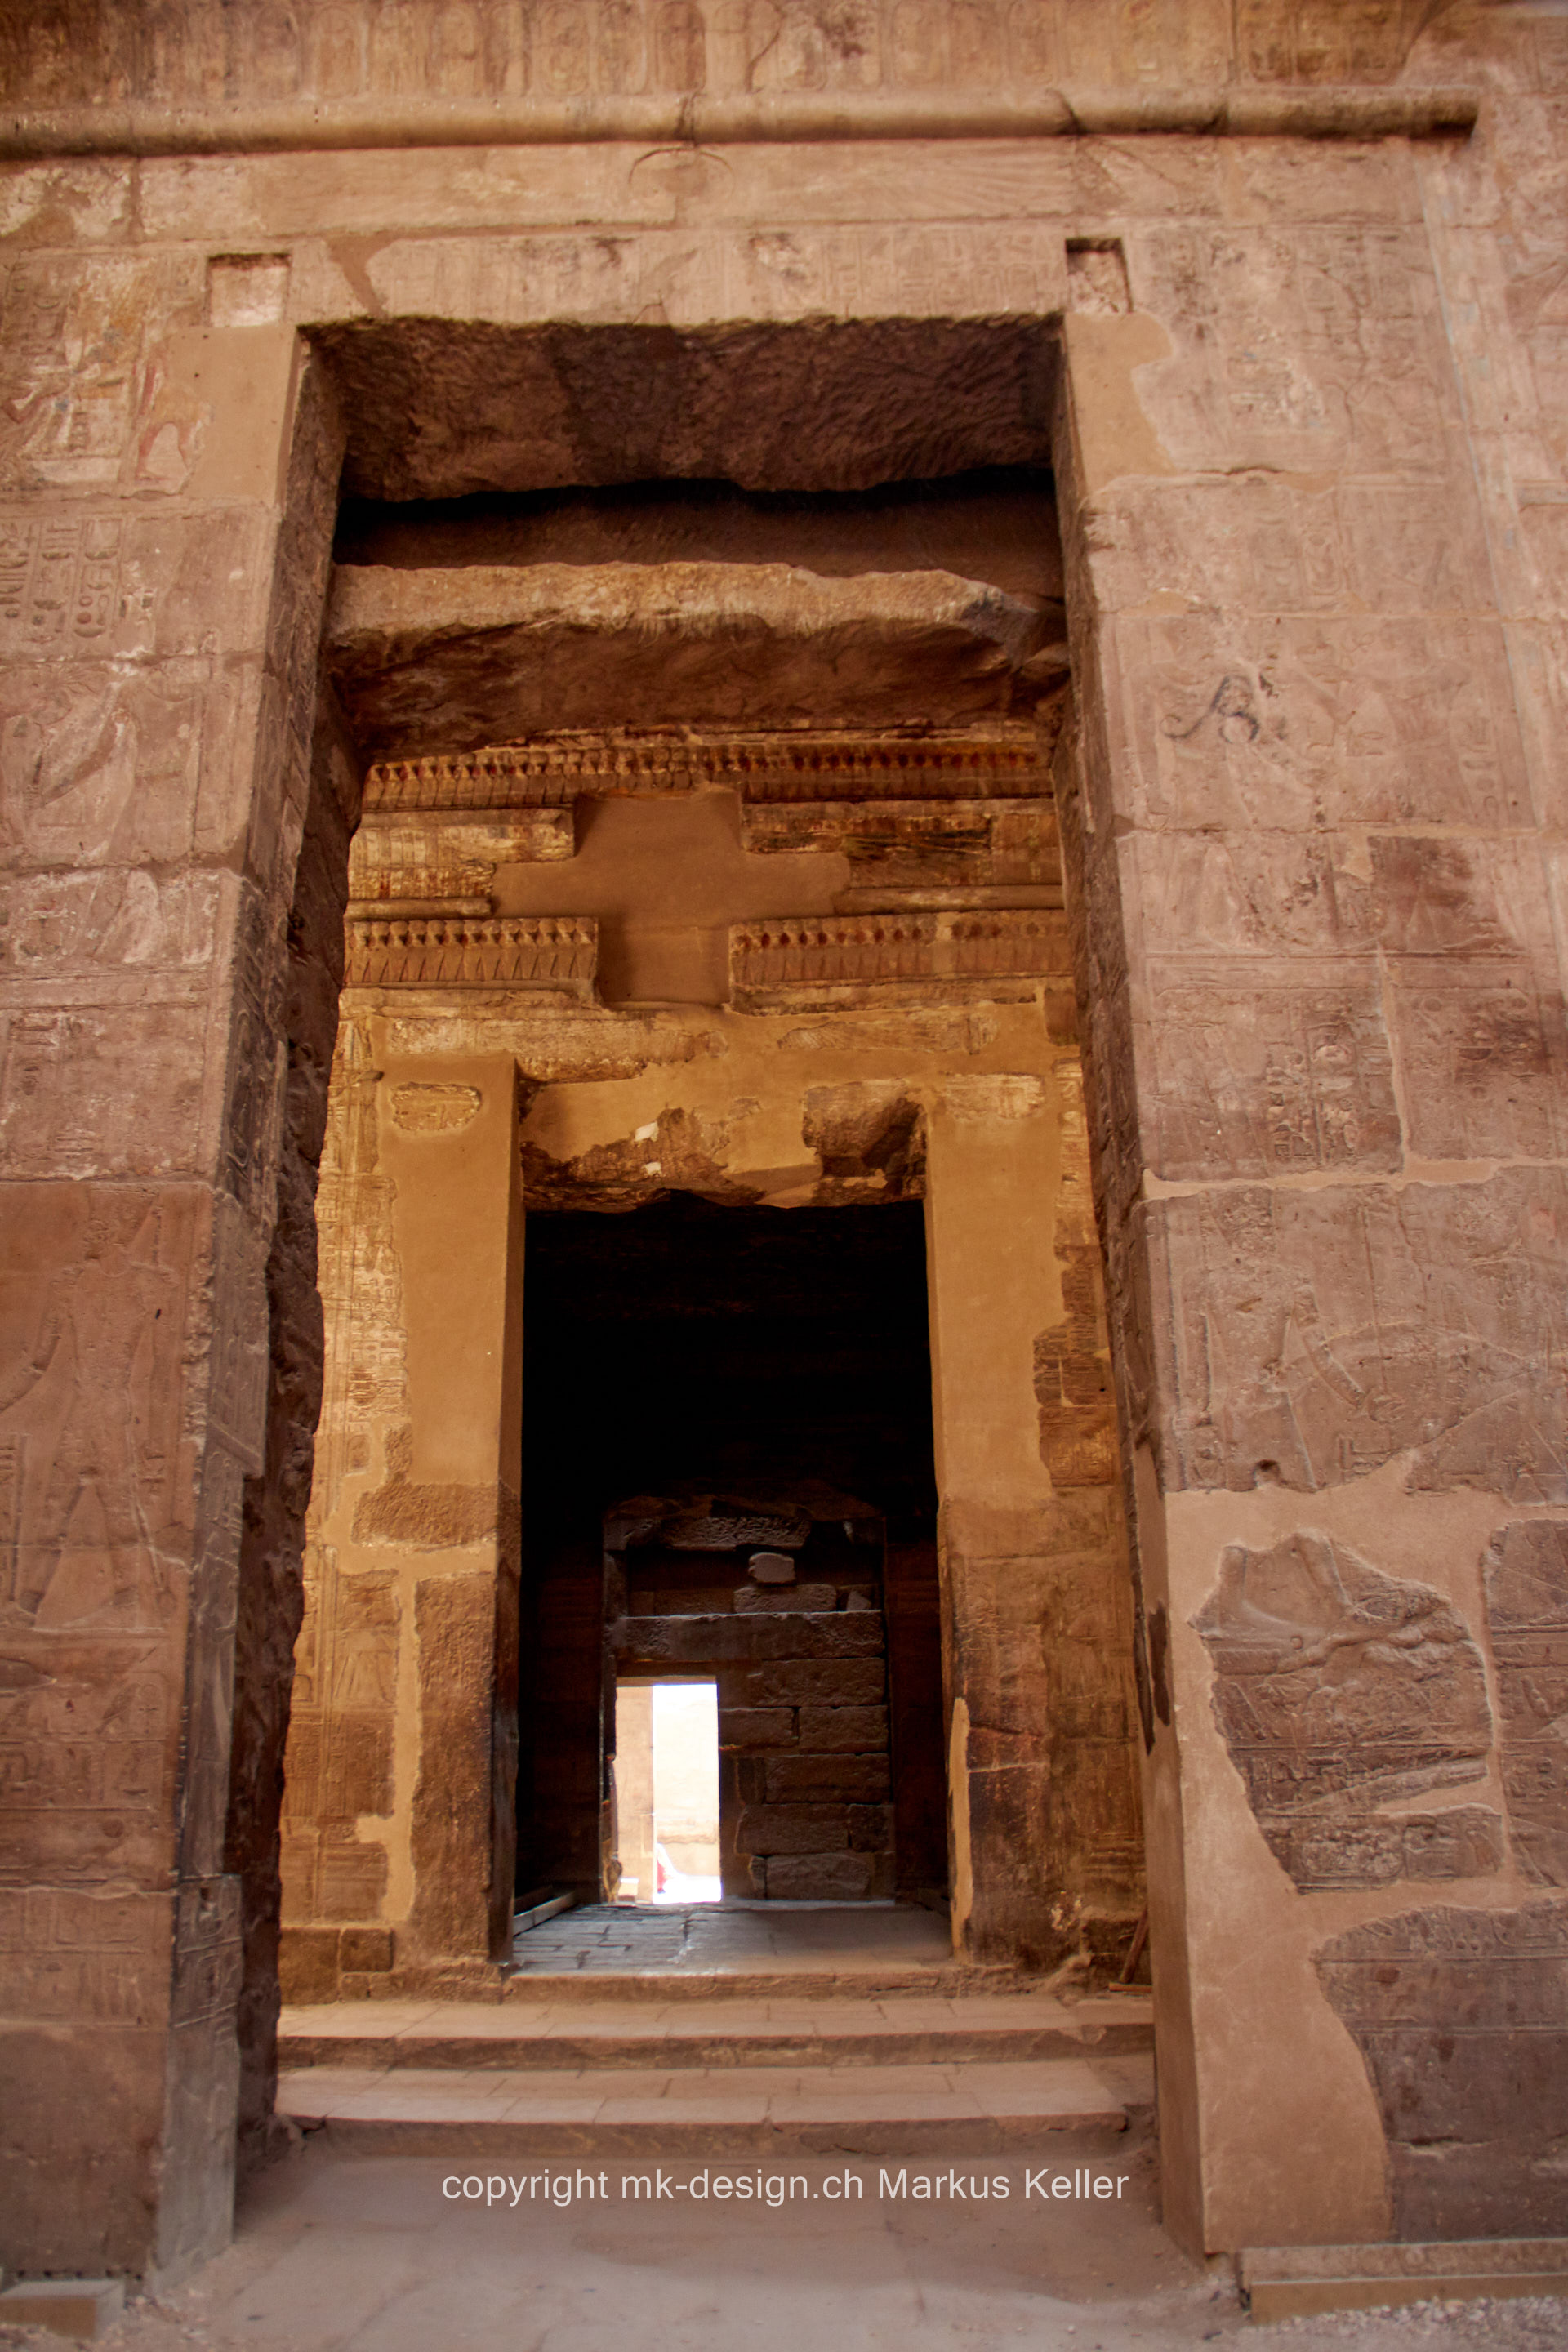 Bauwerk   Tempel   Luxor   